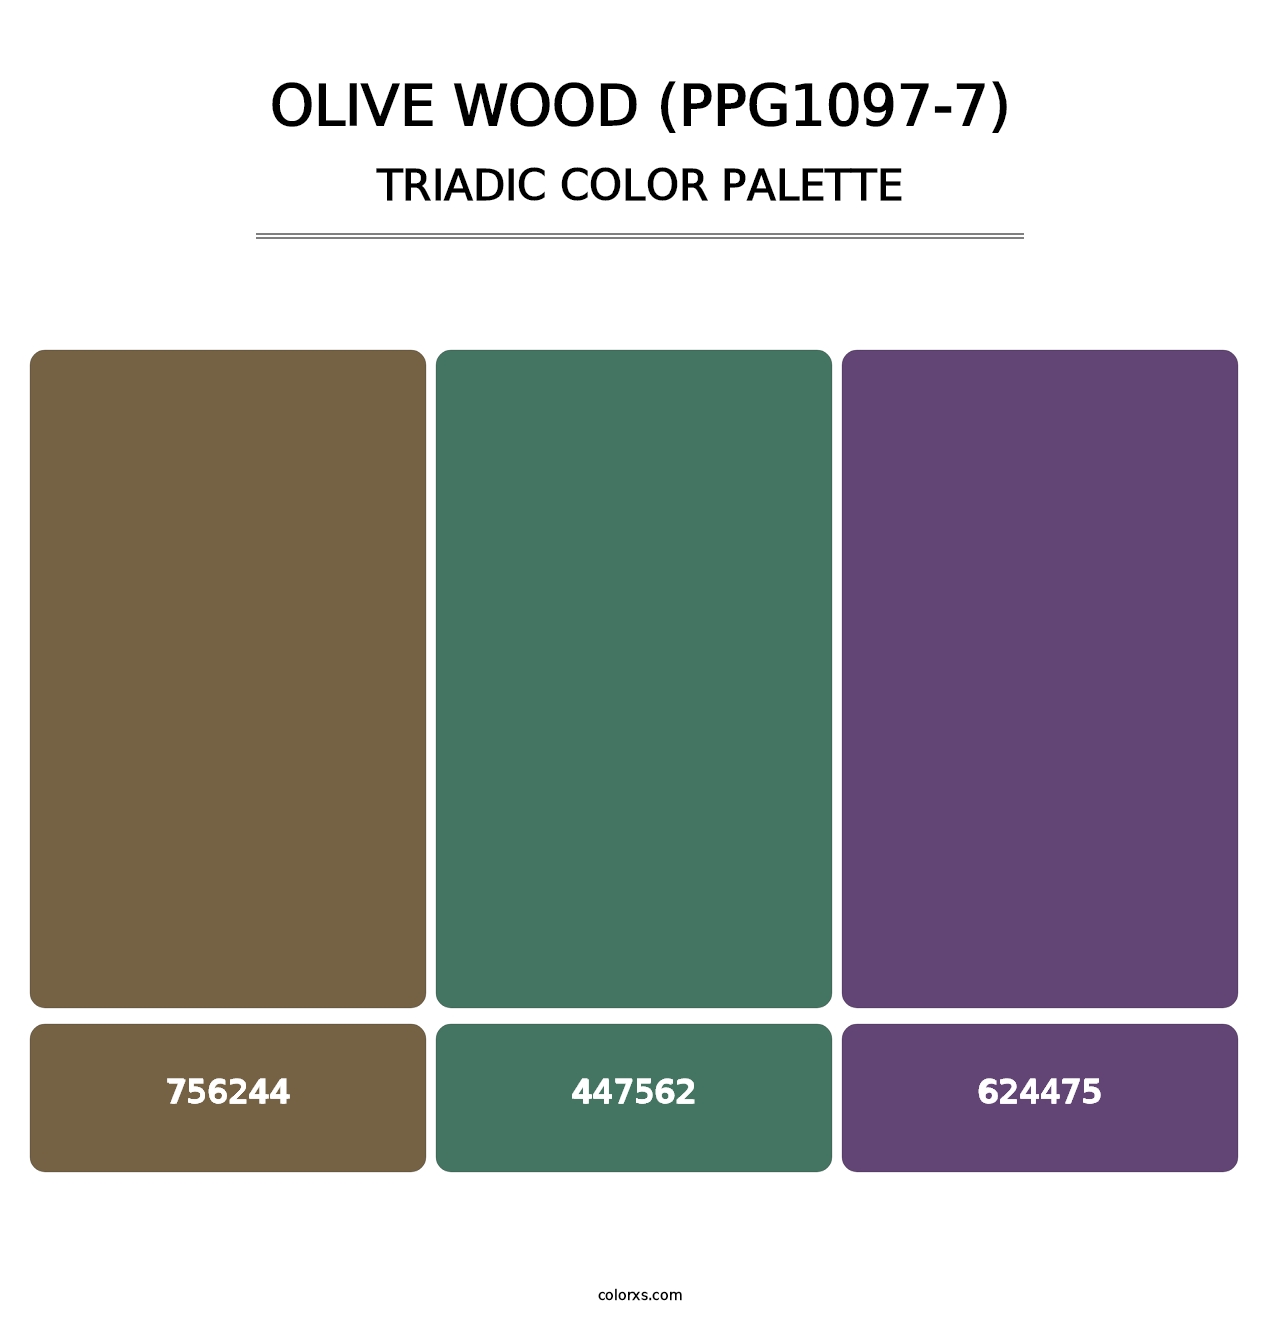 Olive Wood (PPG1097-7) - Triadic Color Palette